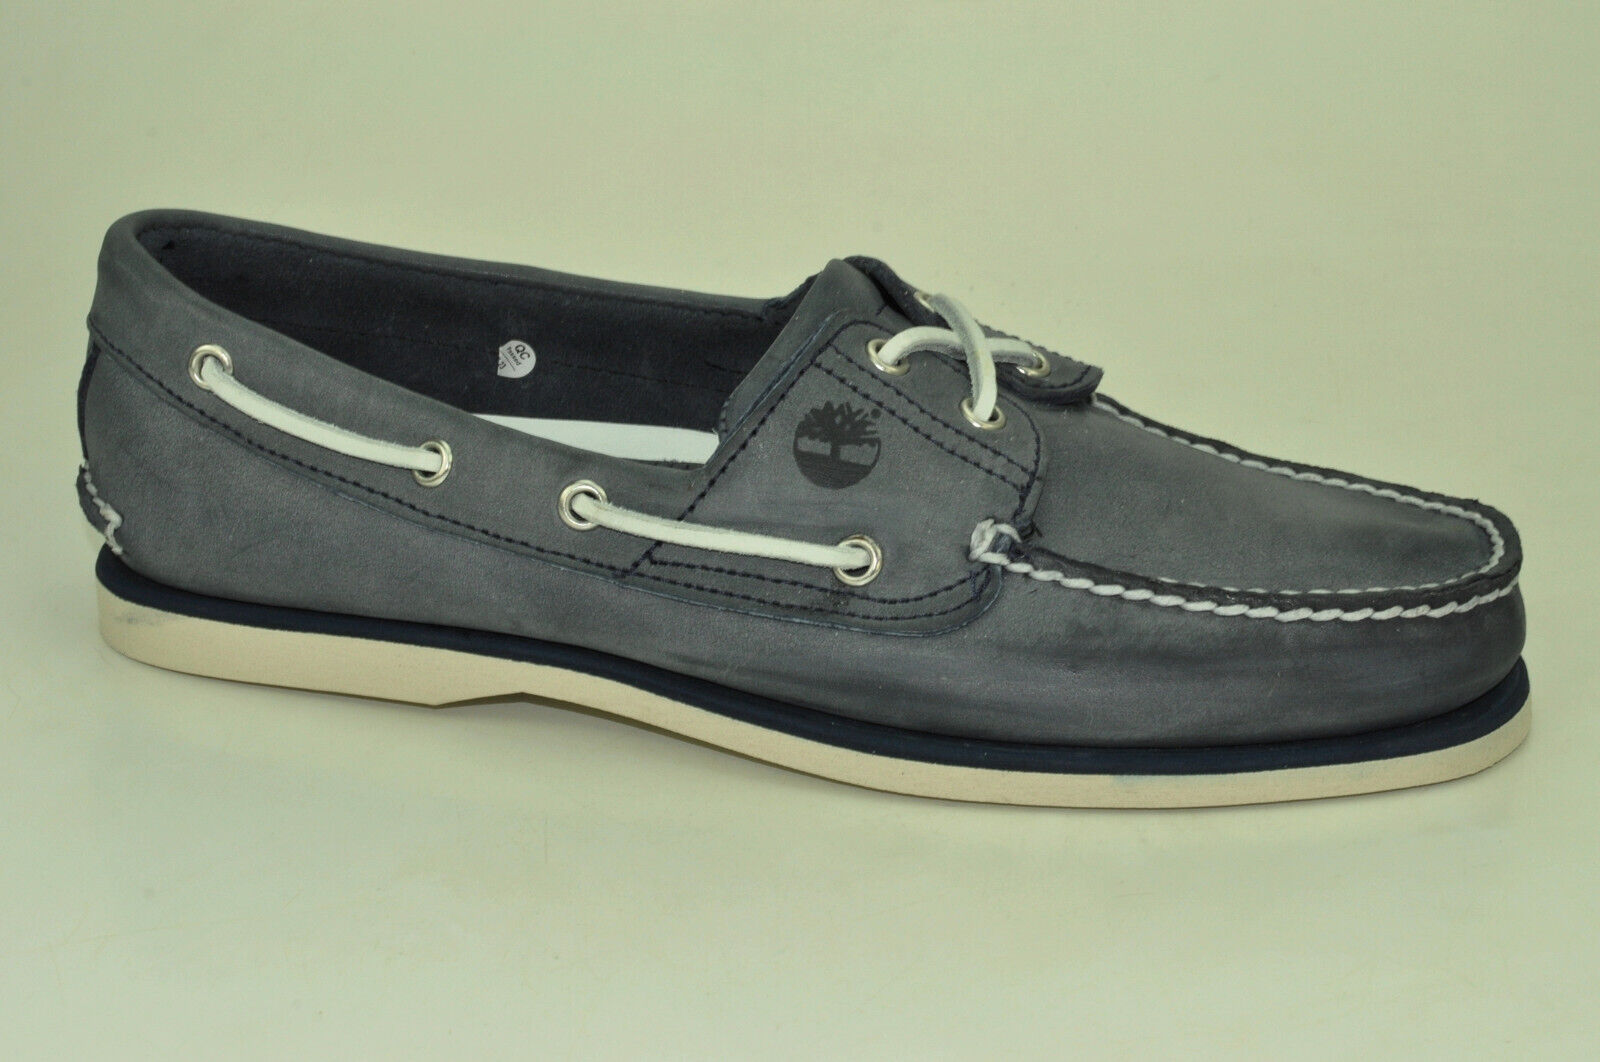 Timberland Segelschuhe Classic 2-Eye Boat Shoes Mokassin Deckschuhe Herren A13OM Schuhgröße EUR 42 US 8,5